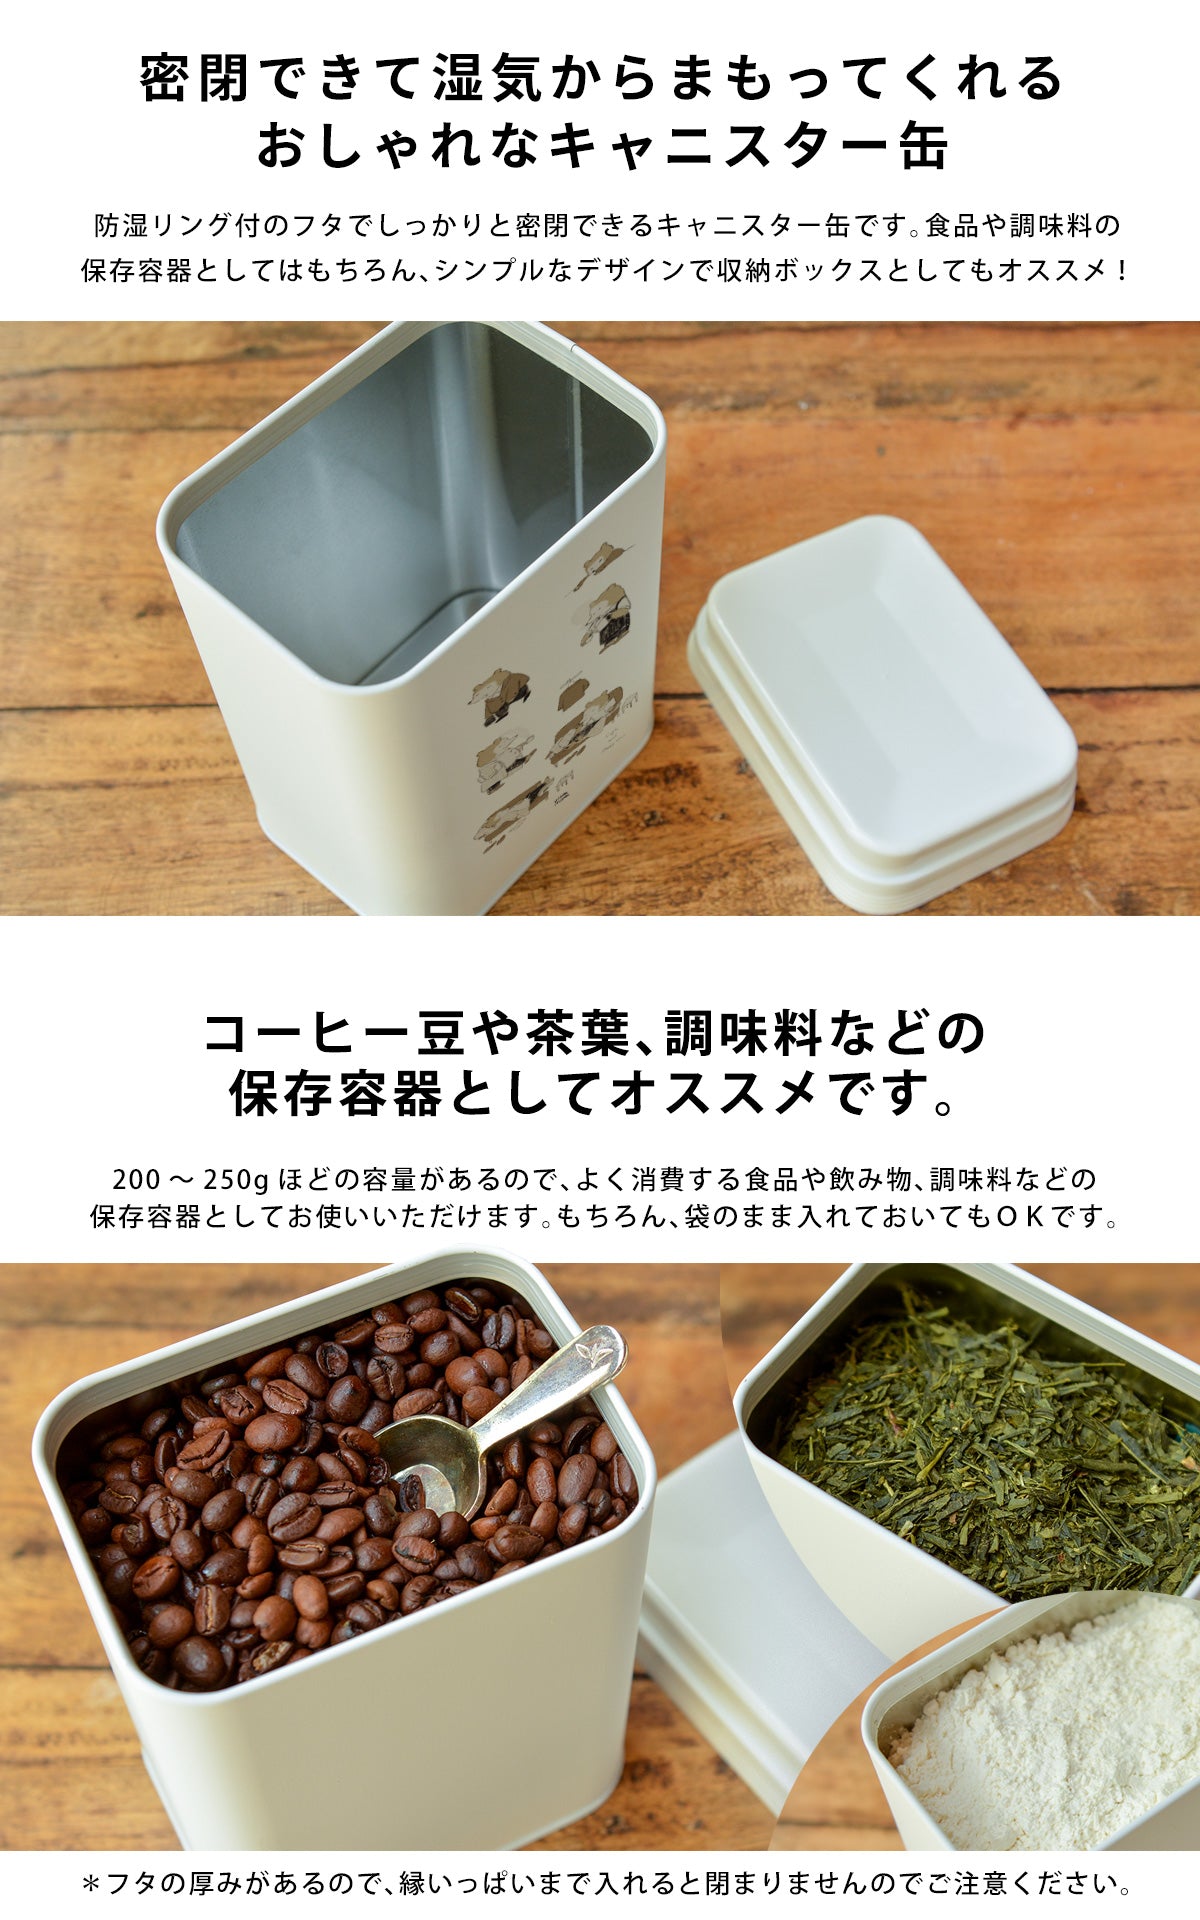 コーヒー豆や茶葉、調味料などの保存容器に。おしゃれでかわいいキャニスター缶